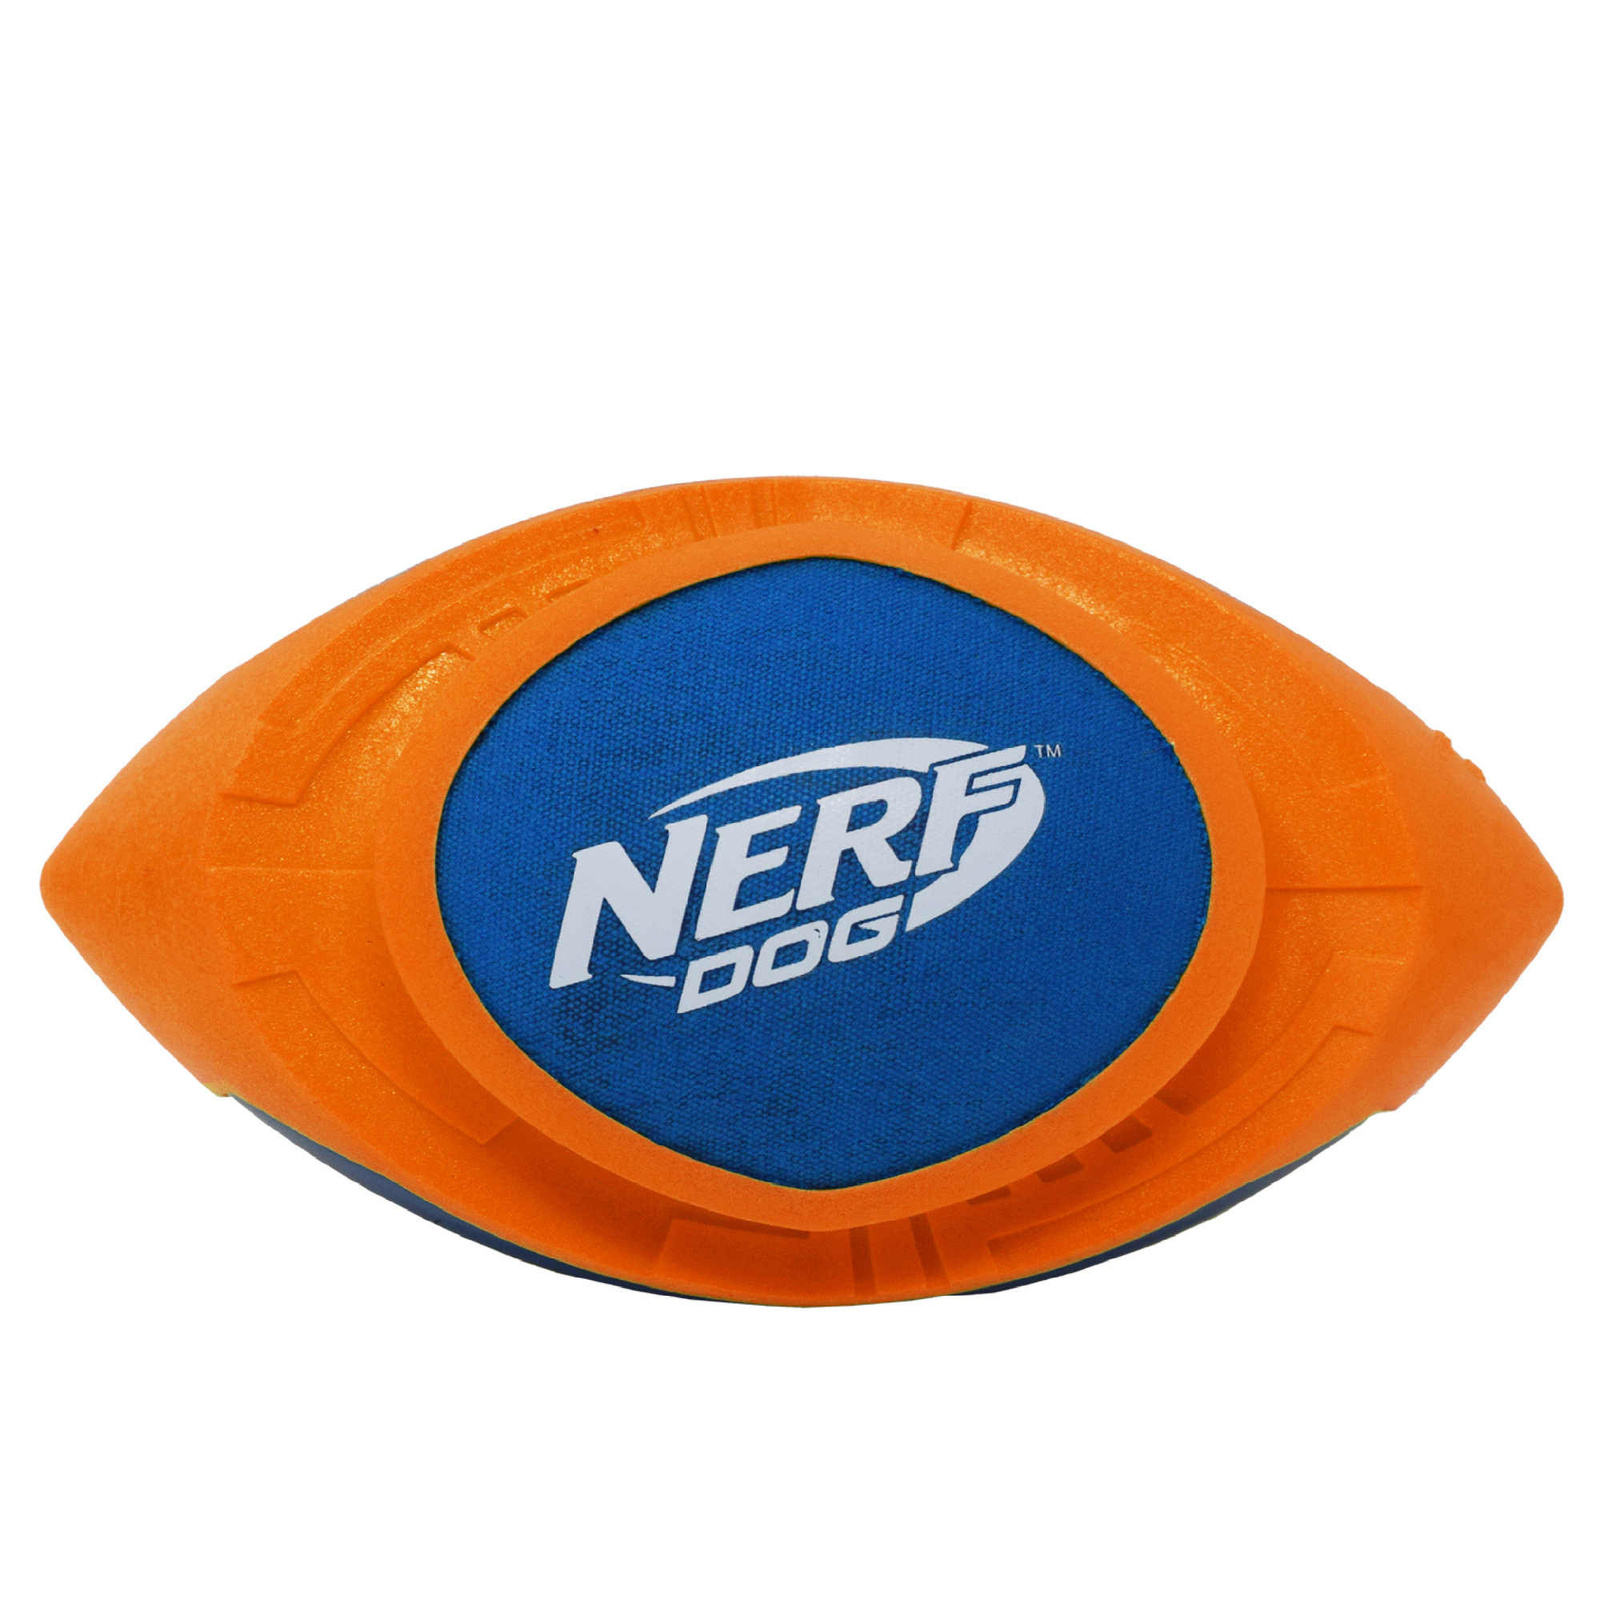 Nerf Nerf мяч для регби из вспененной резины и нейлона, 18 см (серия Мегатон), (синий/оранжевый) (263 г) nerf nerf мяч из вспененной резины и термопластичной резины 14 см серия мегатон синий зеленый 390 г